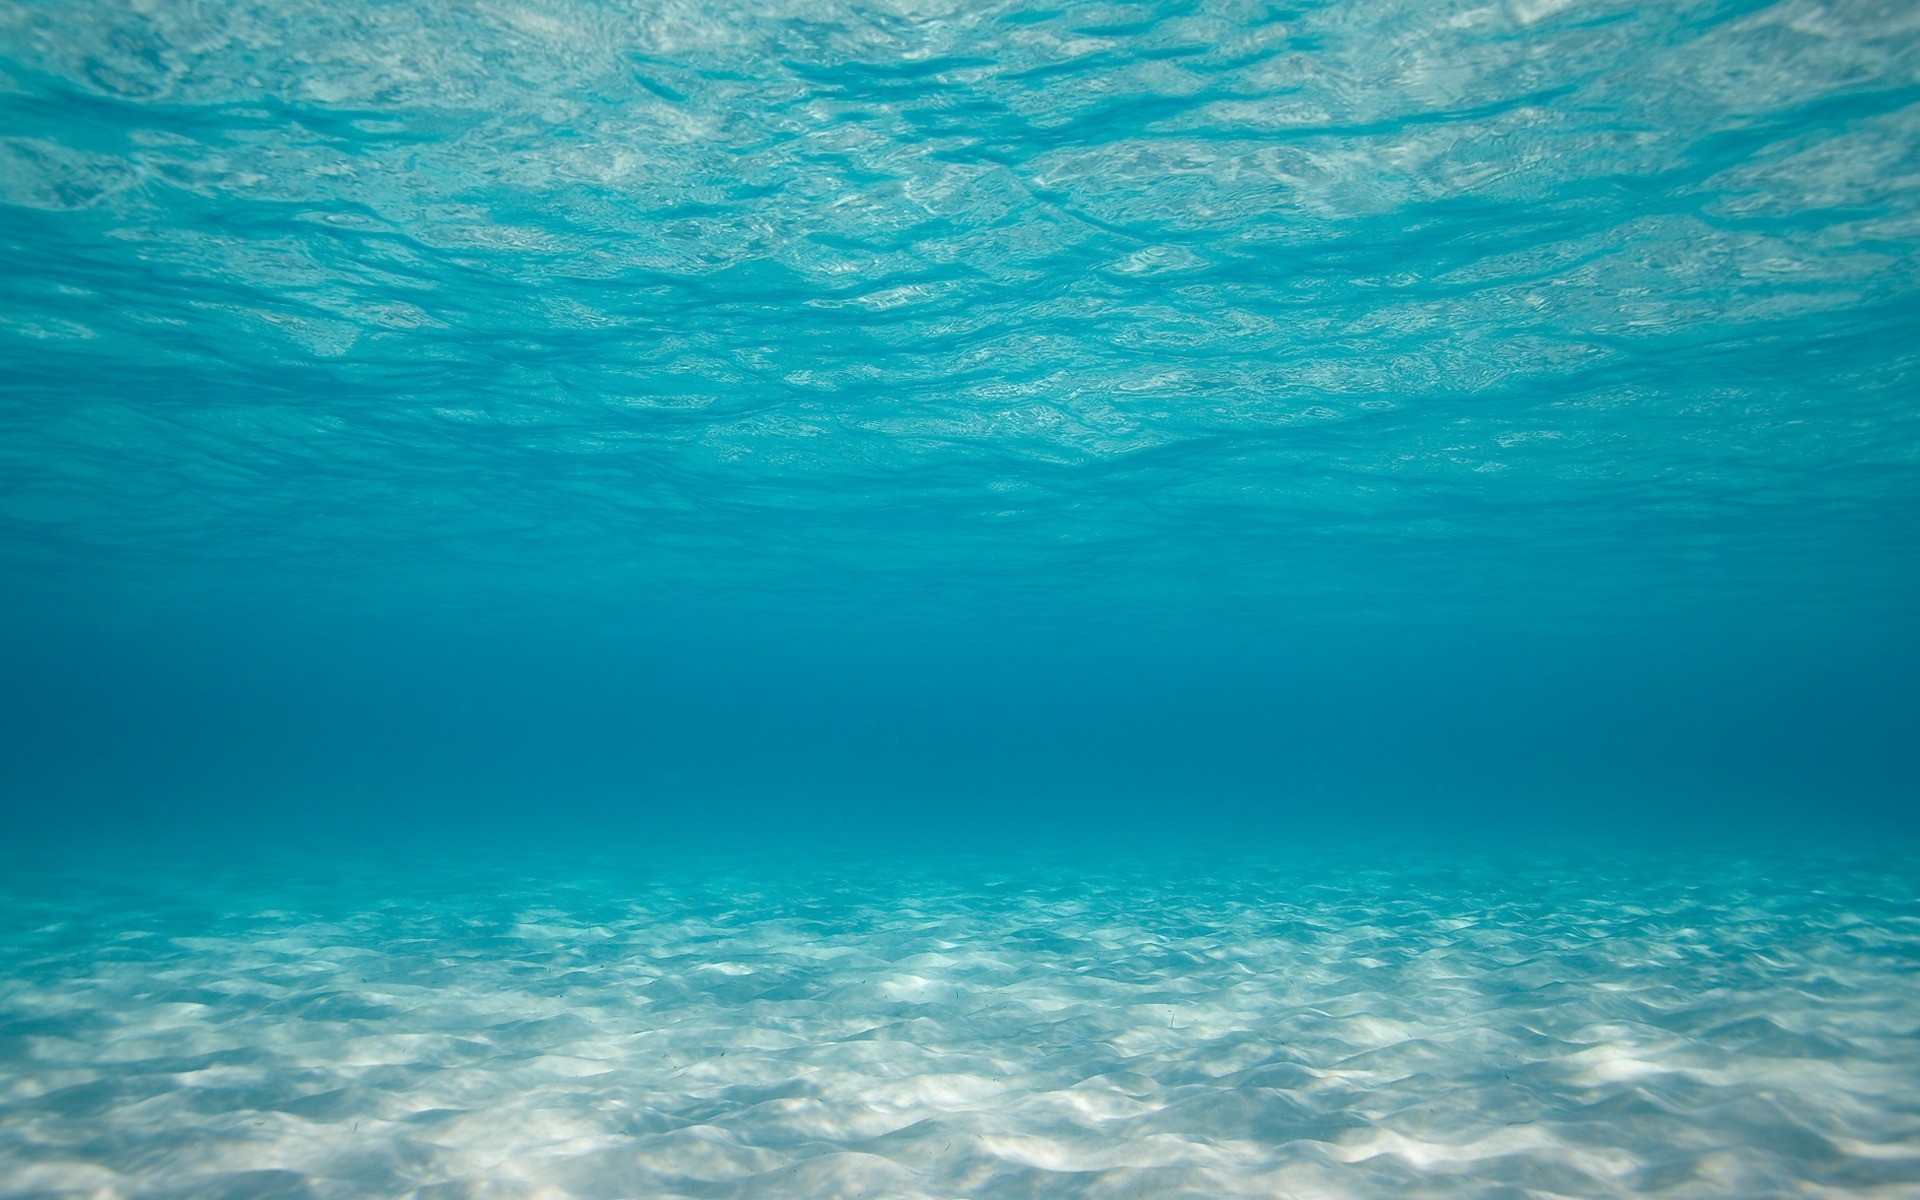 Không gian làm việc của bạn sẽ tỏa sáng với những hình nền dưới nước đầy sức sống từ 72+ Underwater Background. Hãy cùng trải nghiệm cảm giác như đang lặn xuống đáy đại dương, cảm nhận được sự yên tĩnh và độc đáo của thế giới dưới đáy nước.